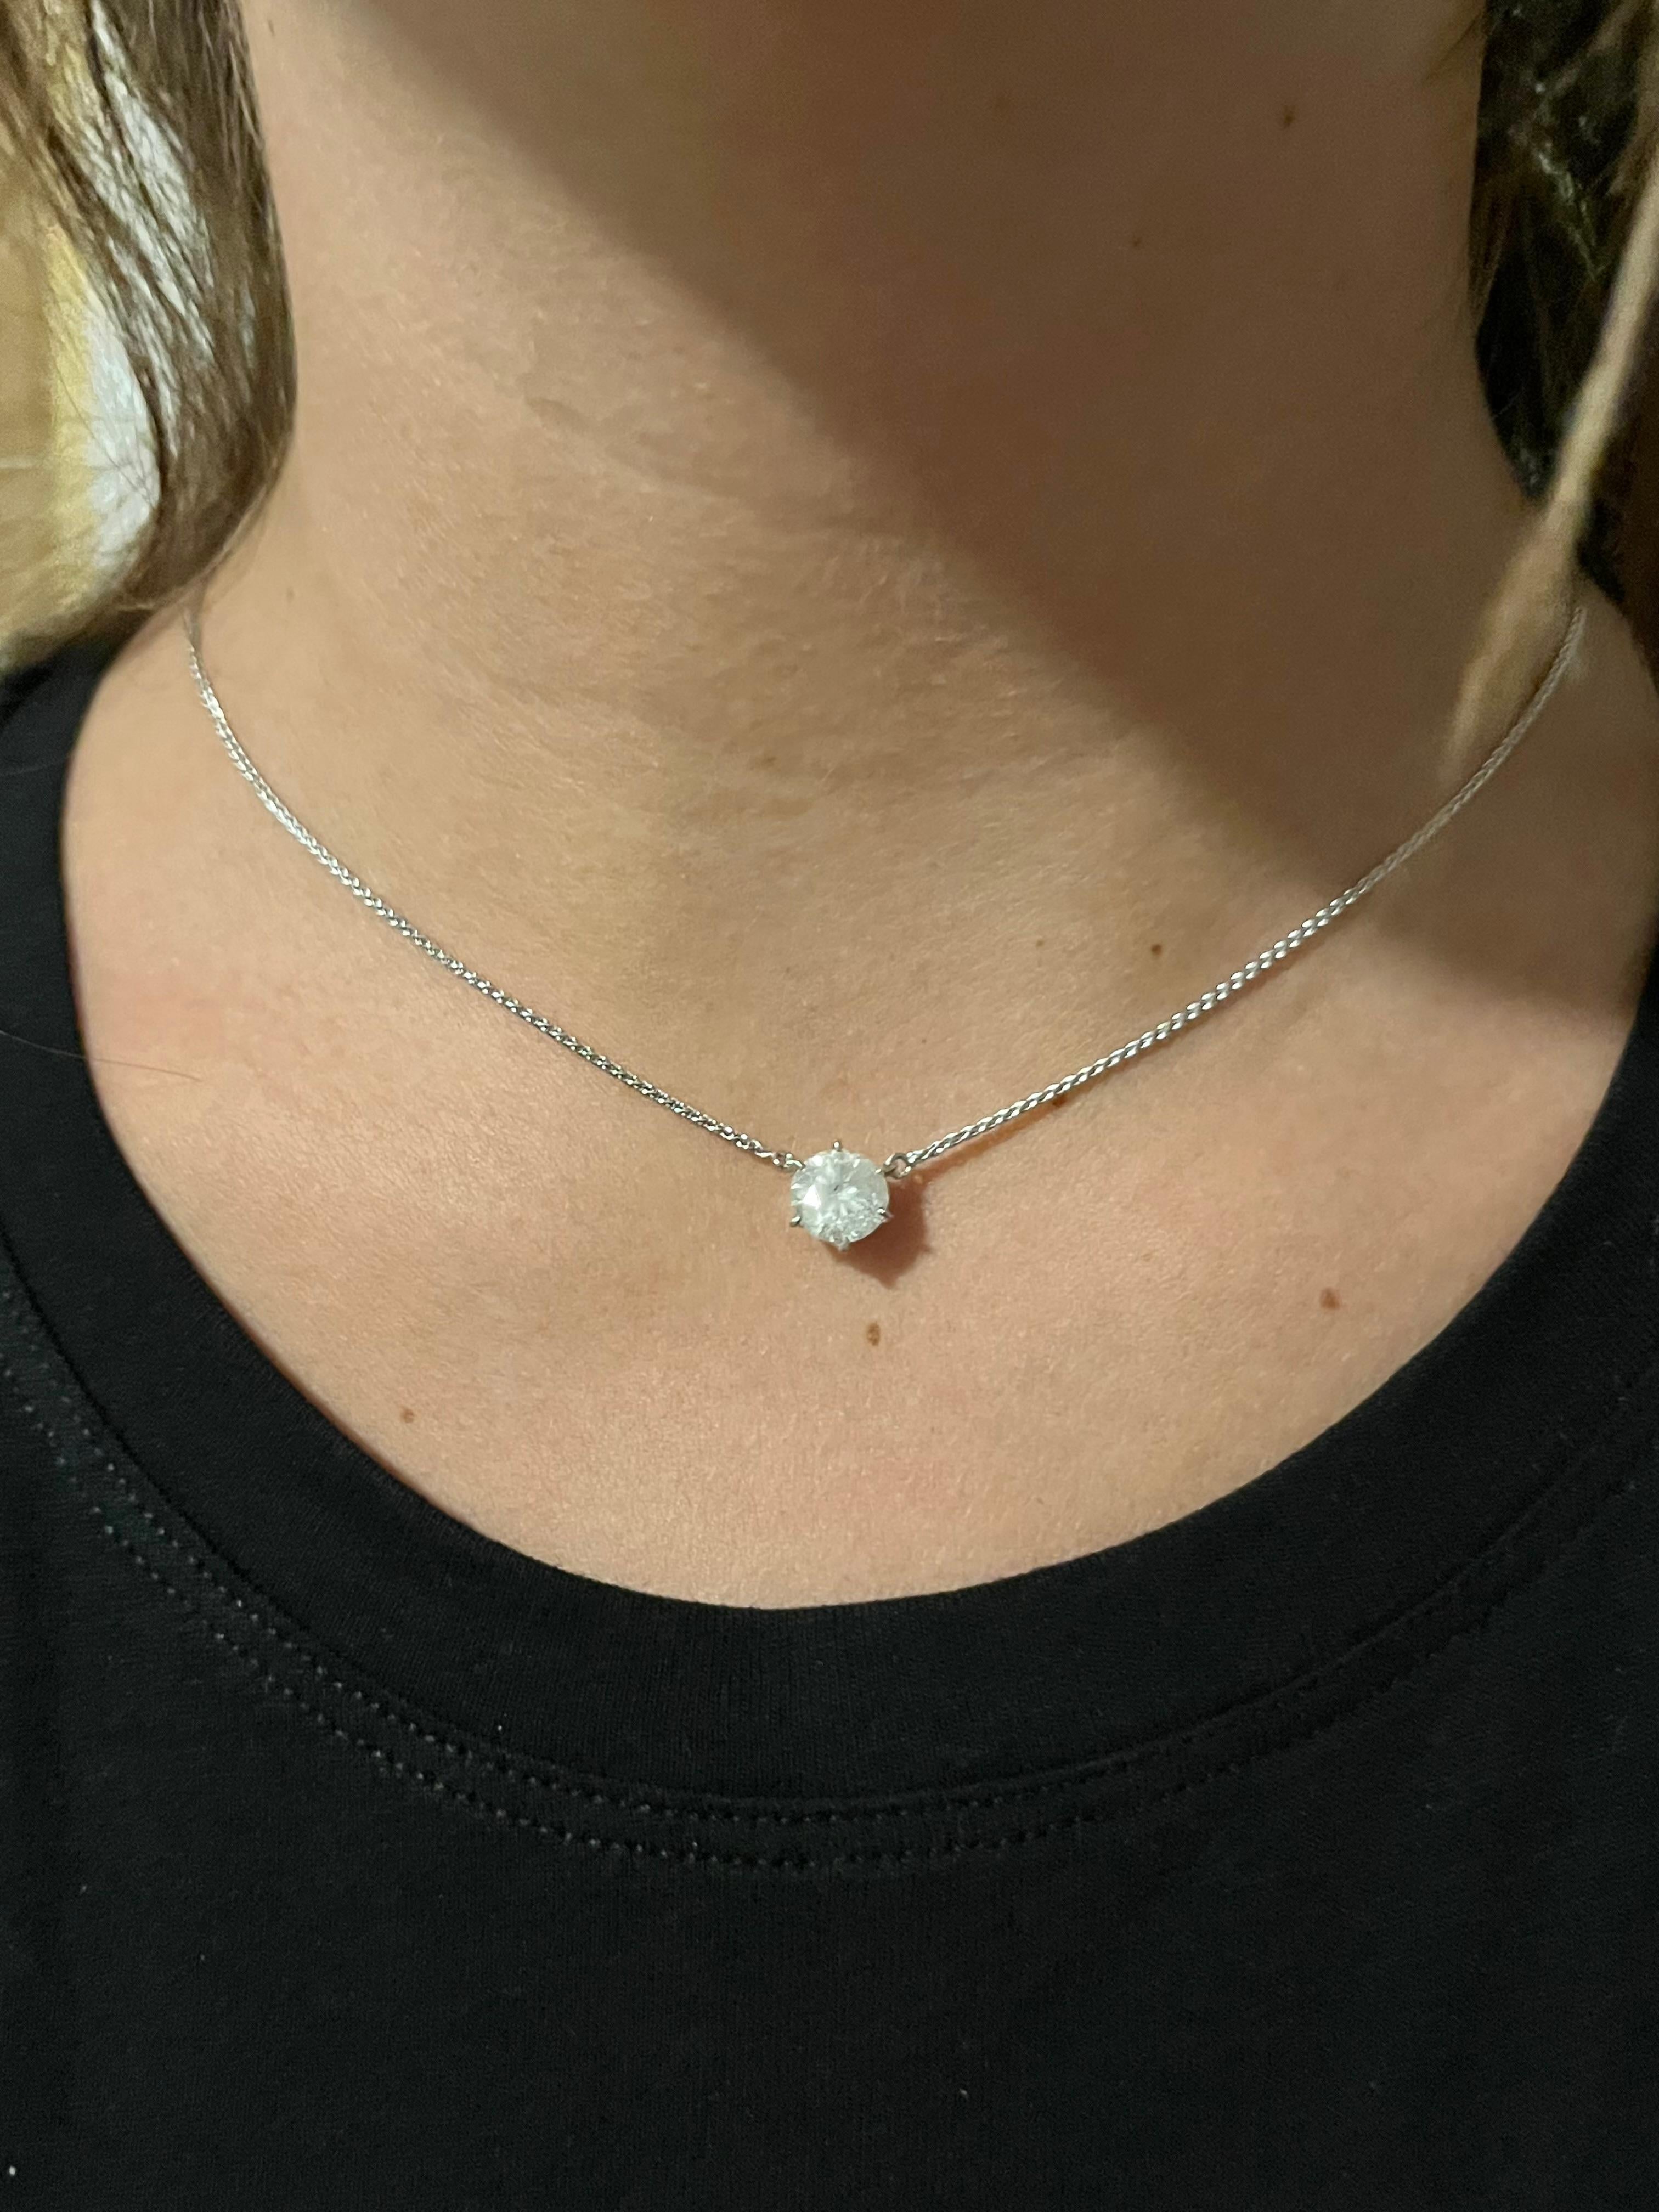 2 carat diamond pendant necklace